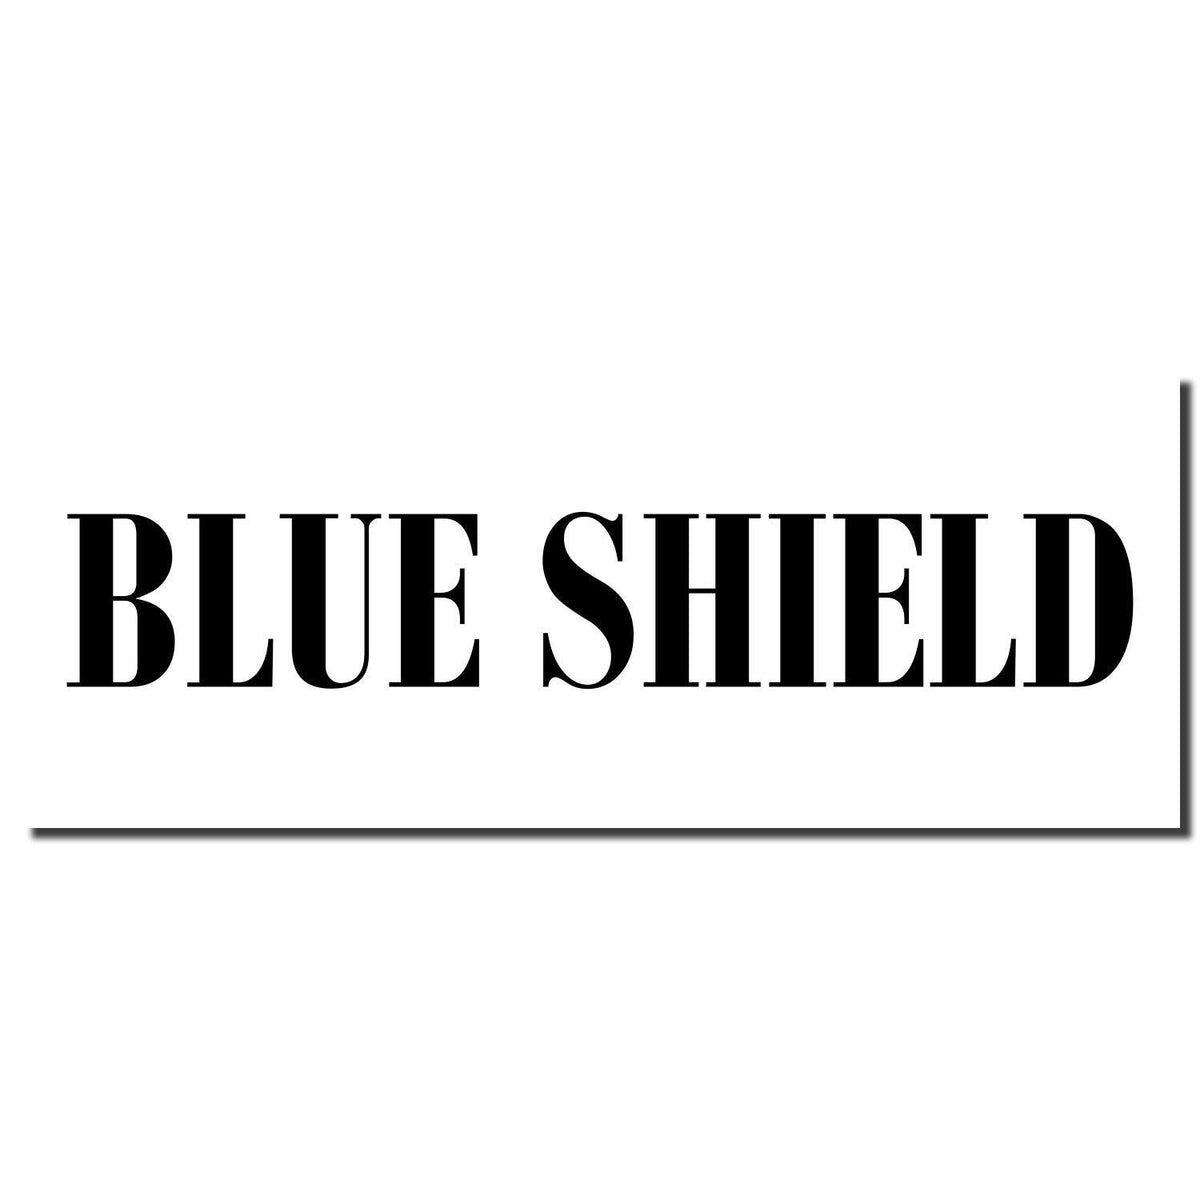 Enlarged Imprint Large Blue Shield Rubber Stamp Sample